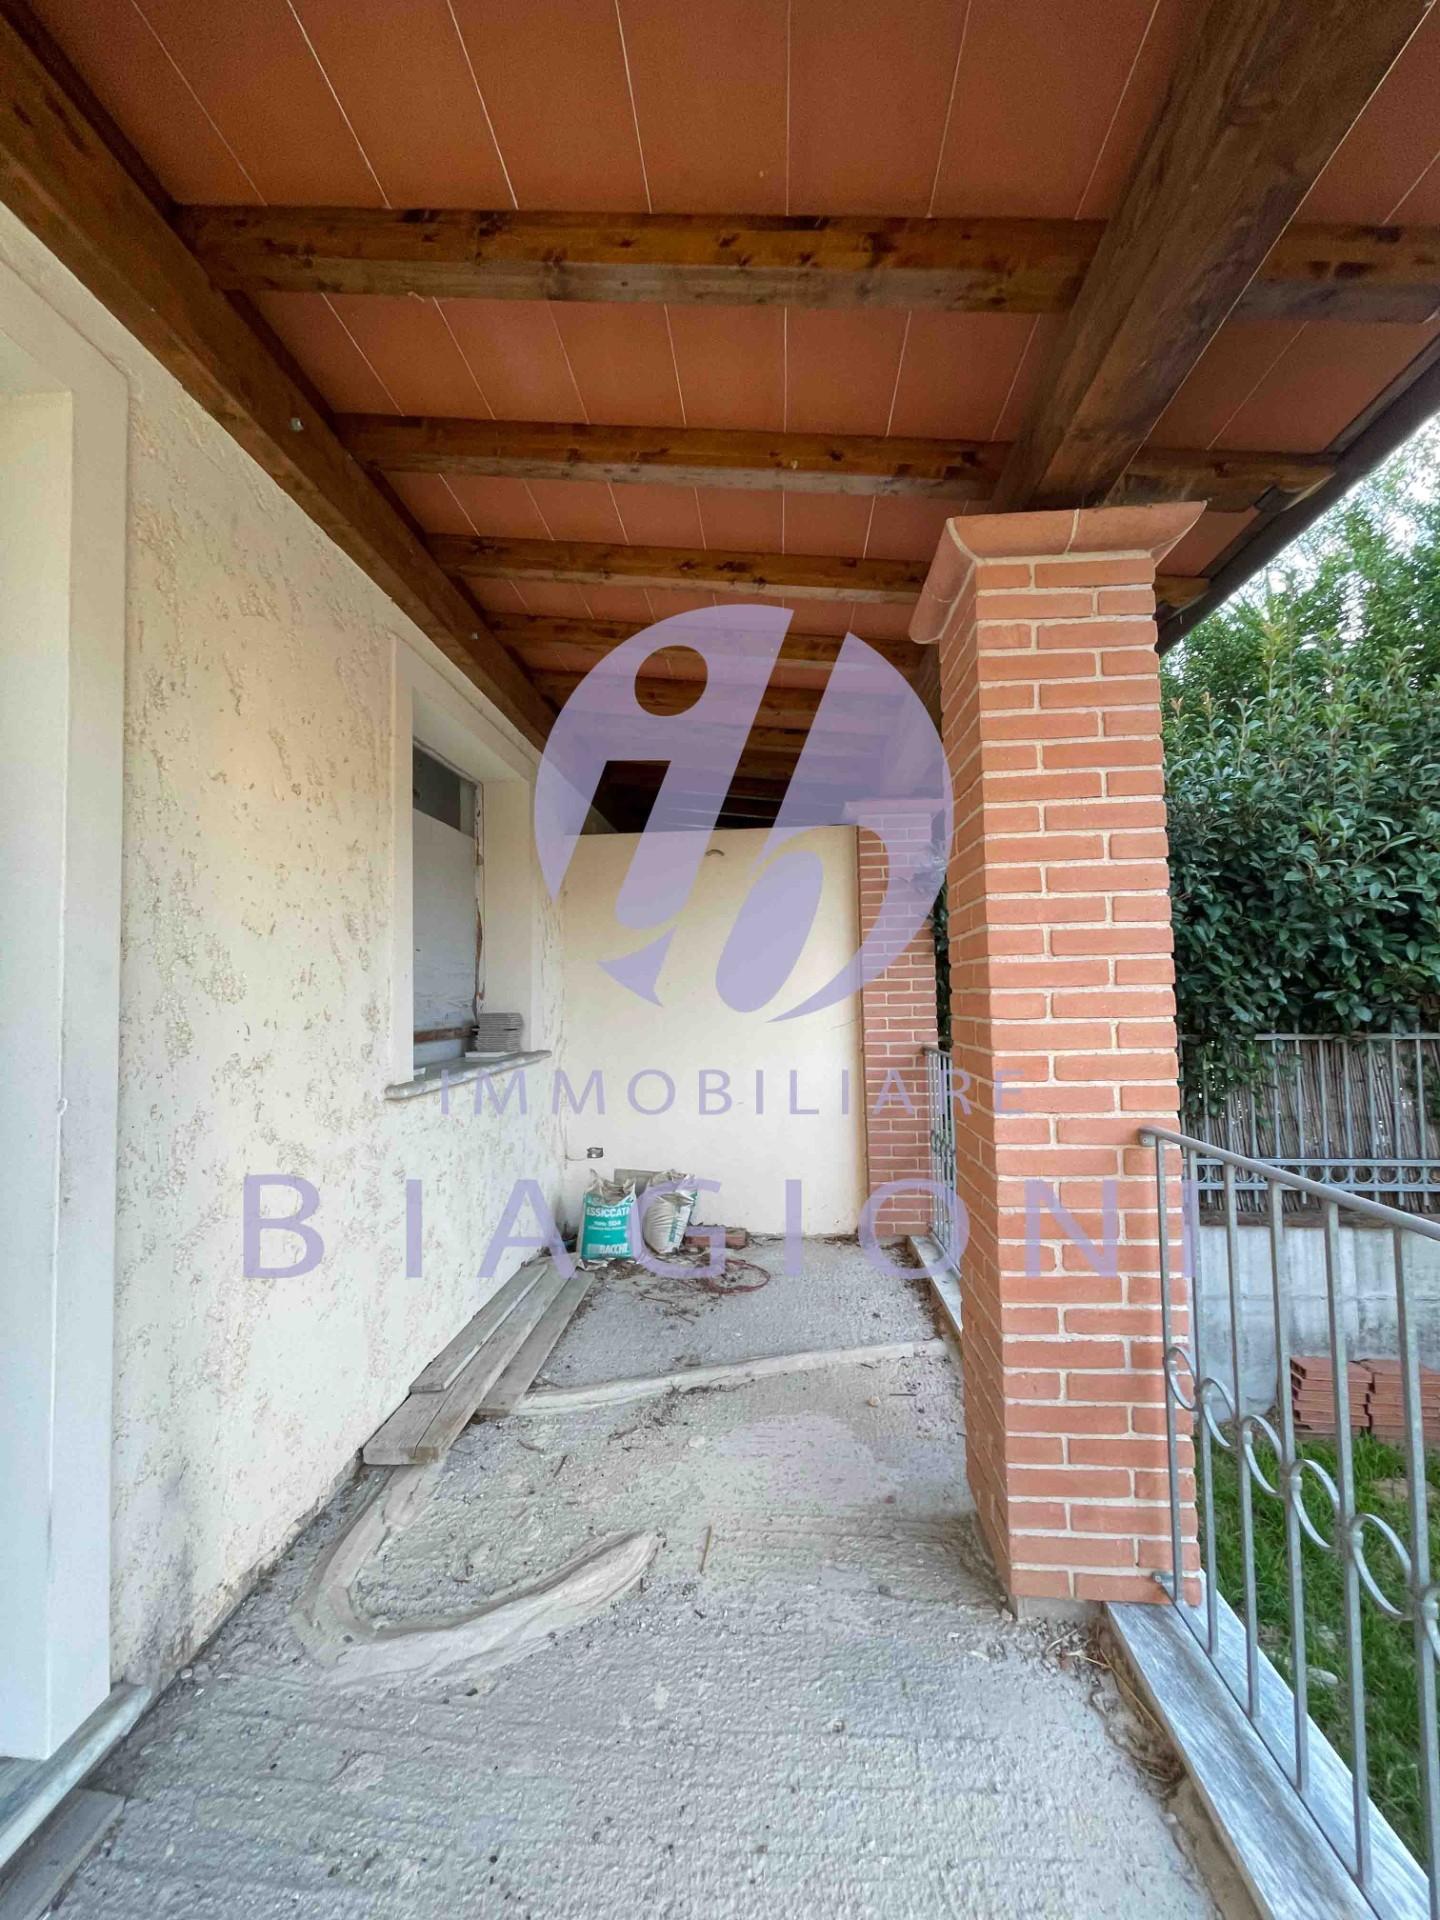 Villa Bifamiliare in vendita a Seravezza, 8 locali, prezzo € 400.000 | PortaleAgenzieImmobiliari.it